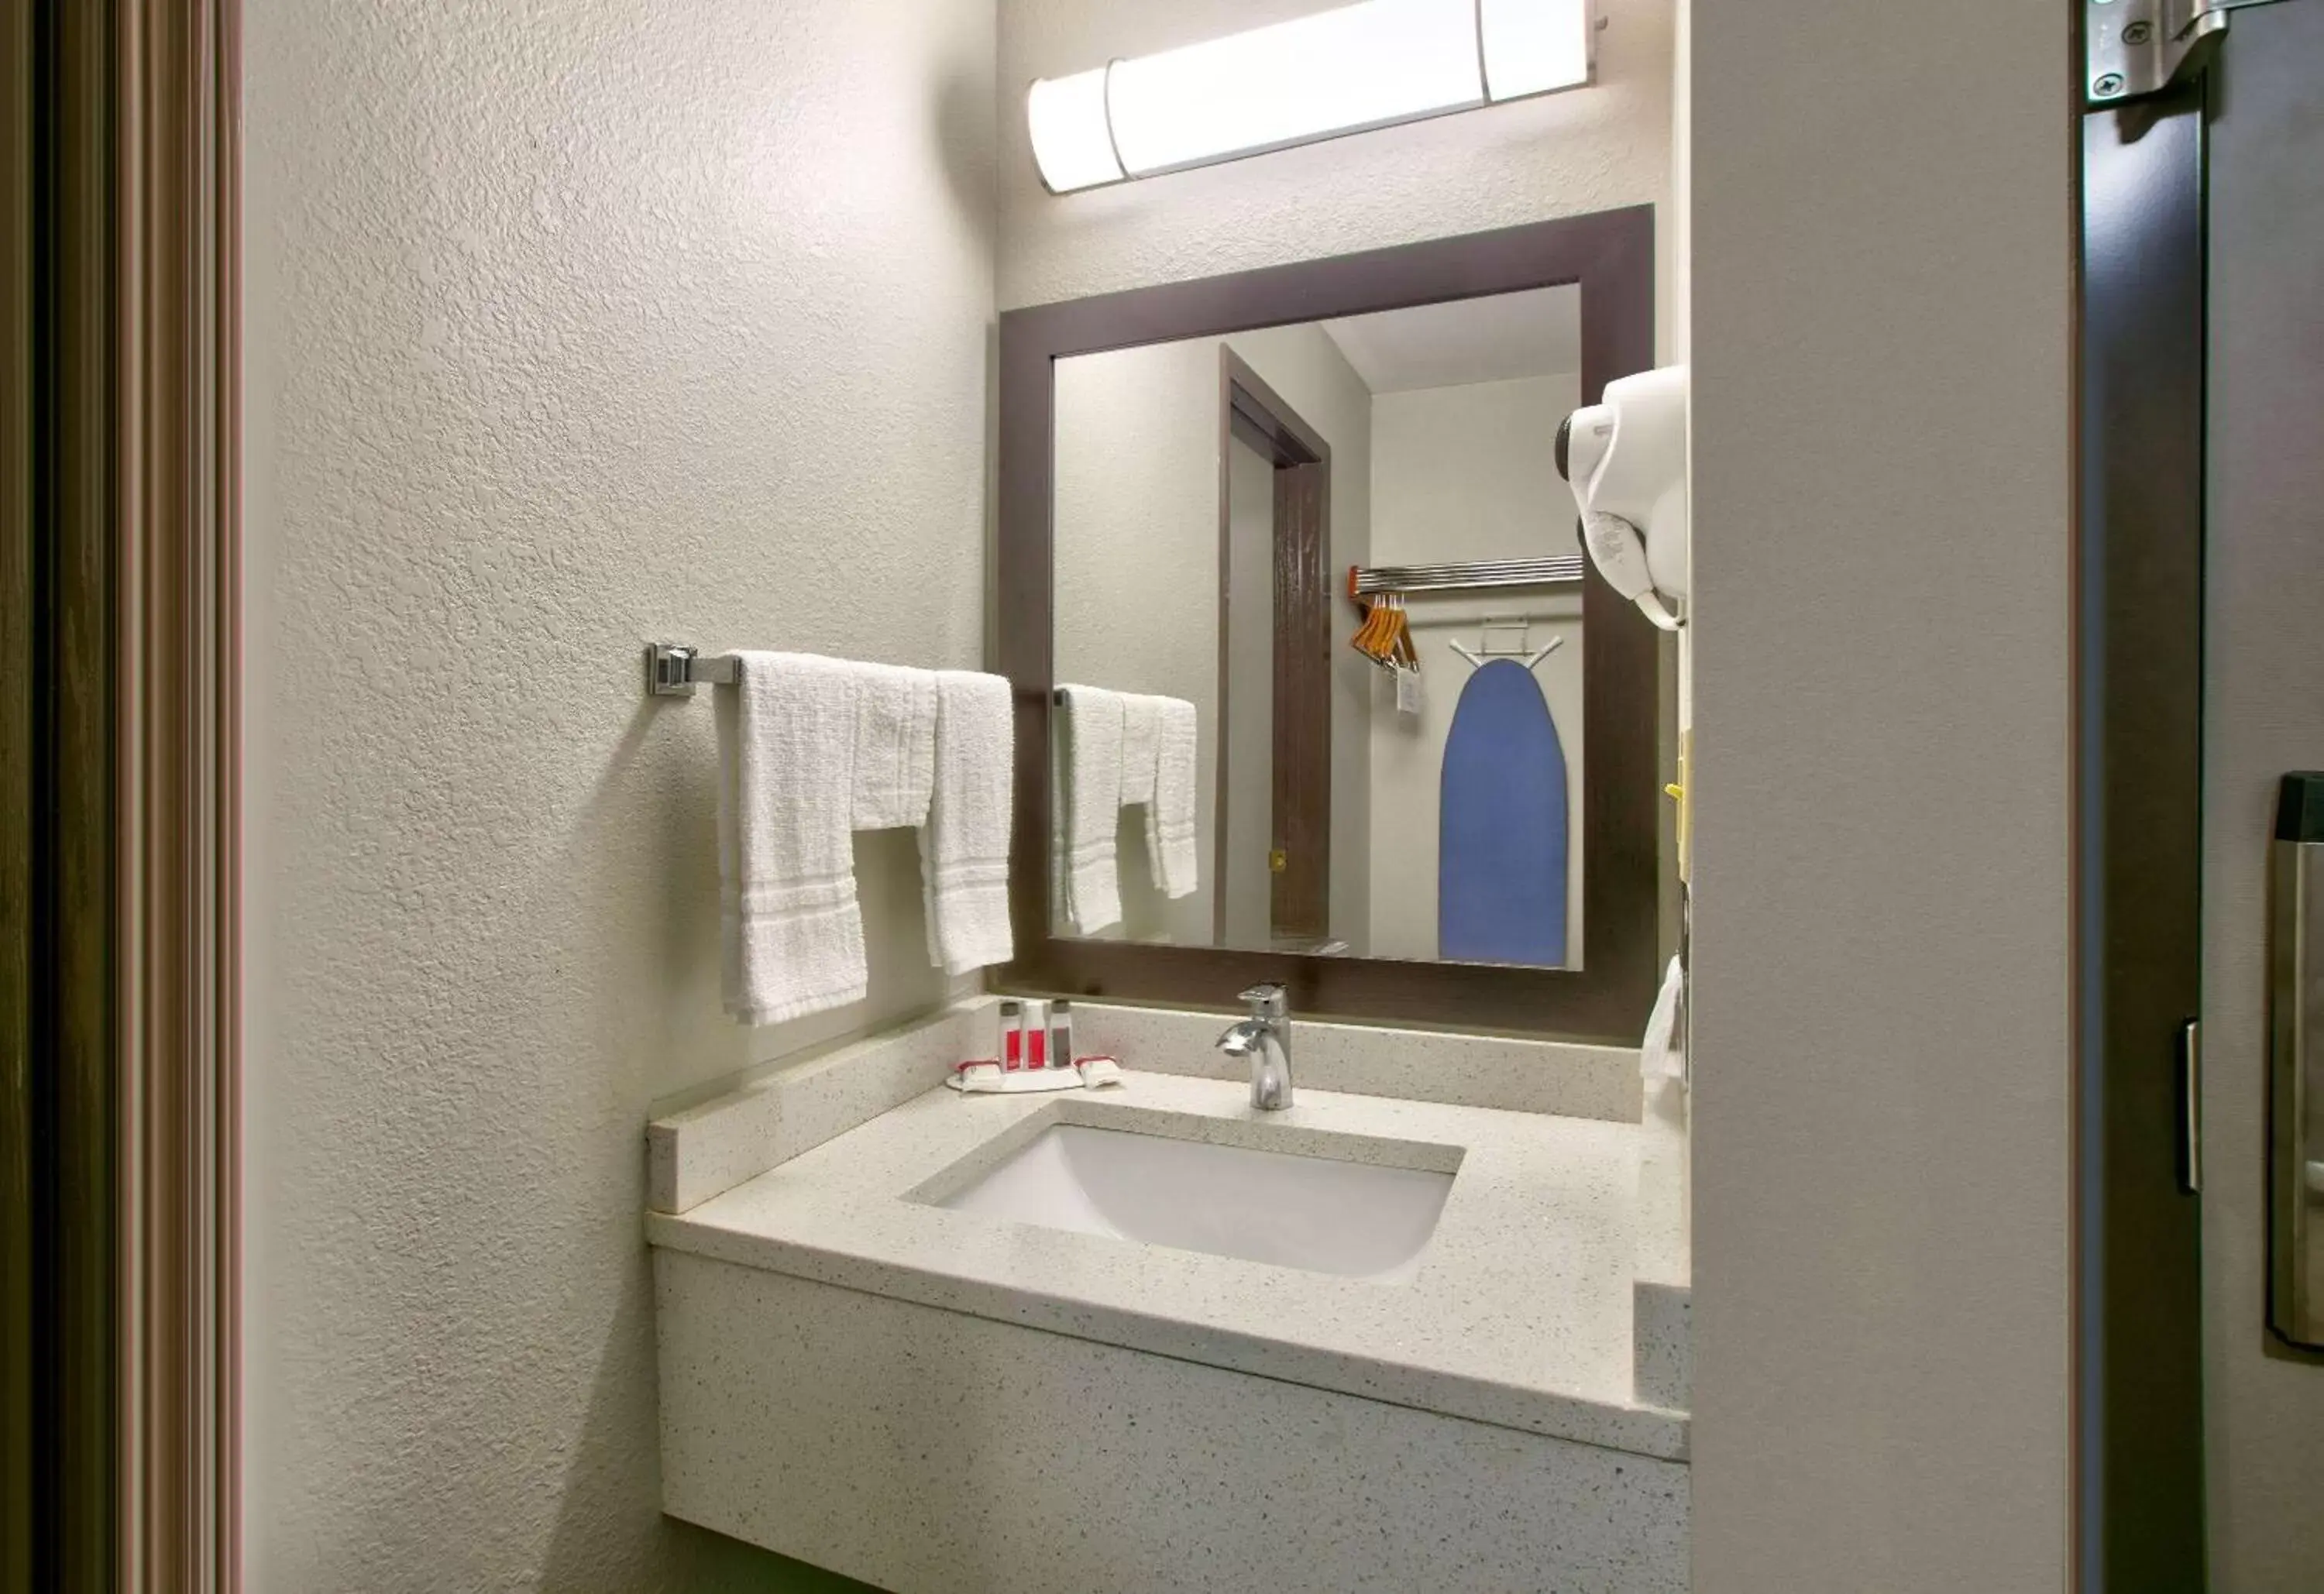 TV and multimedia, Bathroom in Days Inn by Wyndham Tunica Resorts